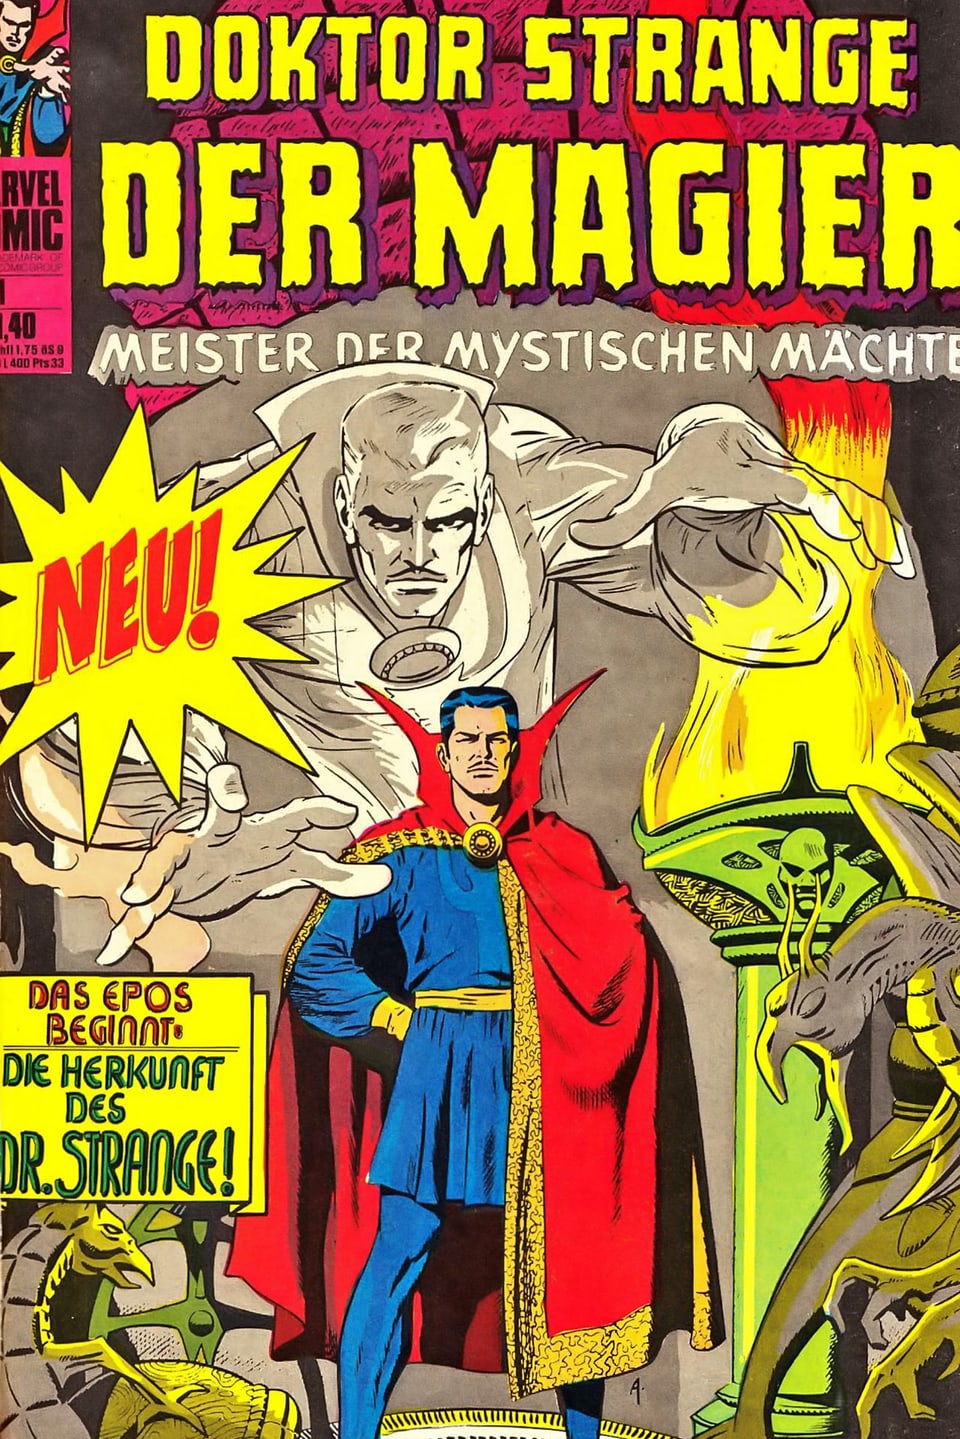 Titelblatt des Comics "Doktor Strange". Mann mit Umhang, hinter dem eine geisterhafte Figur aufsteigt.